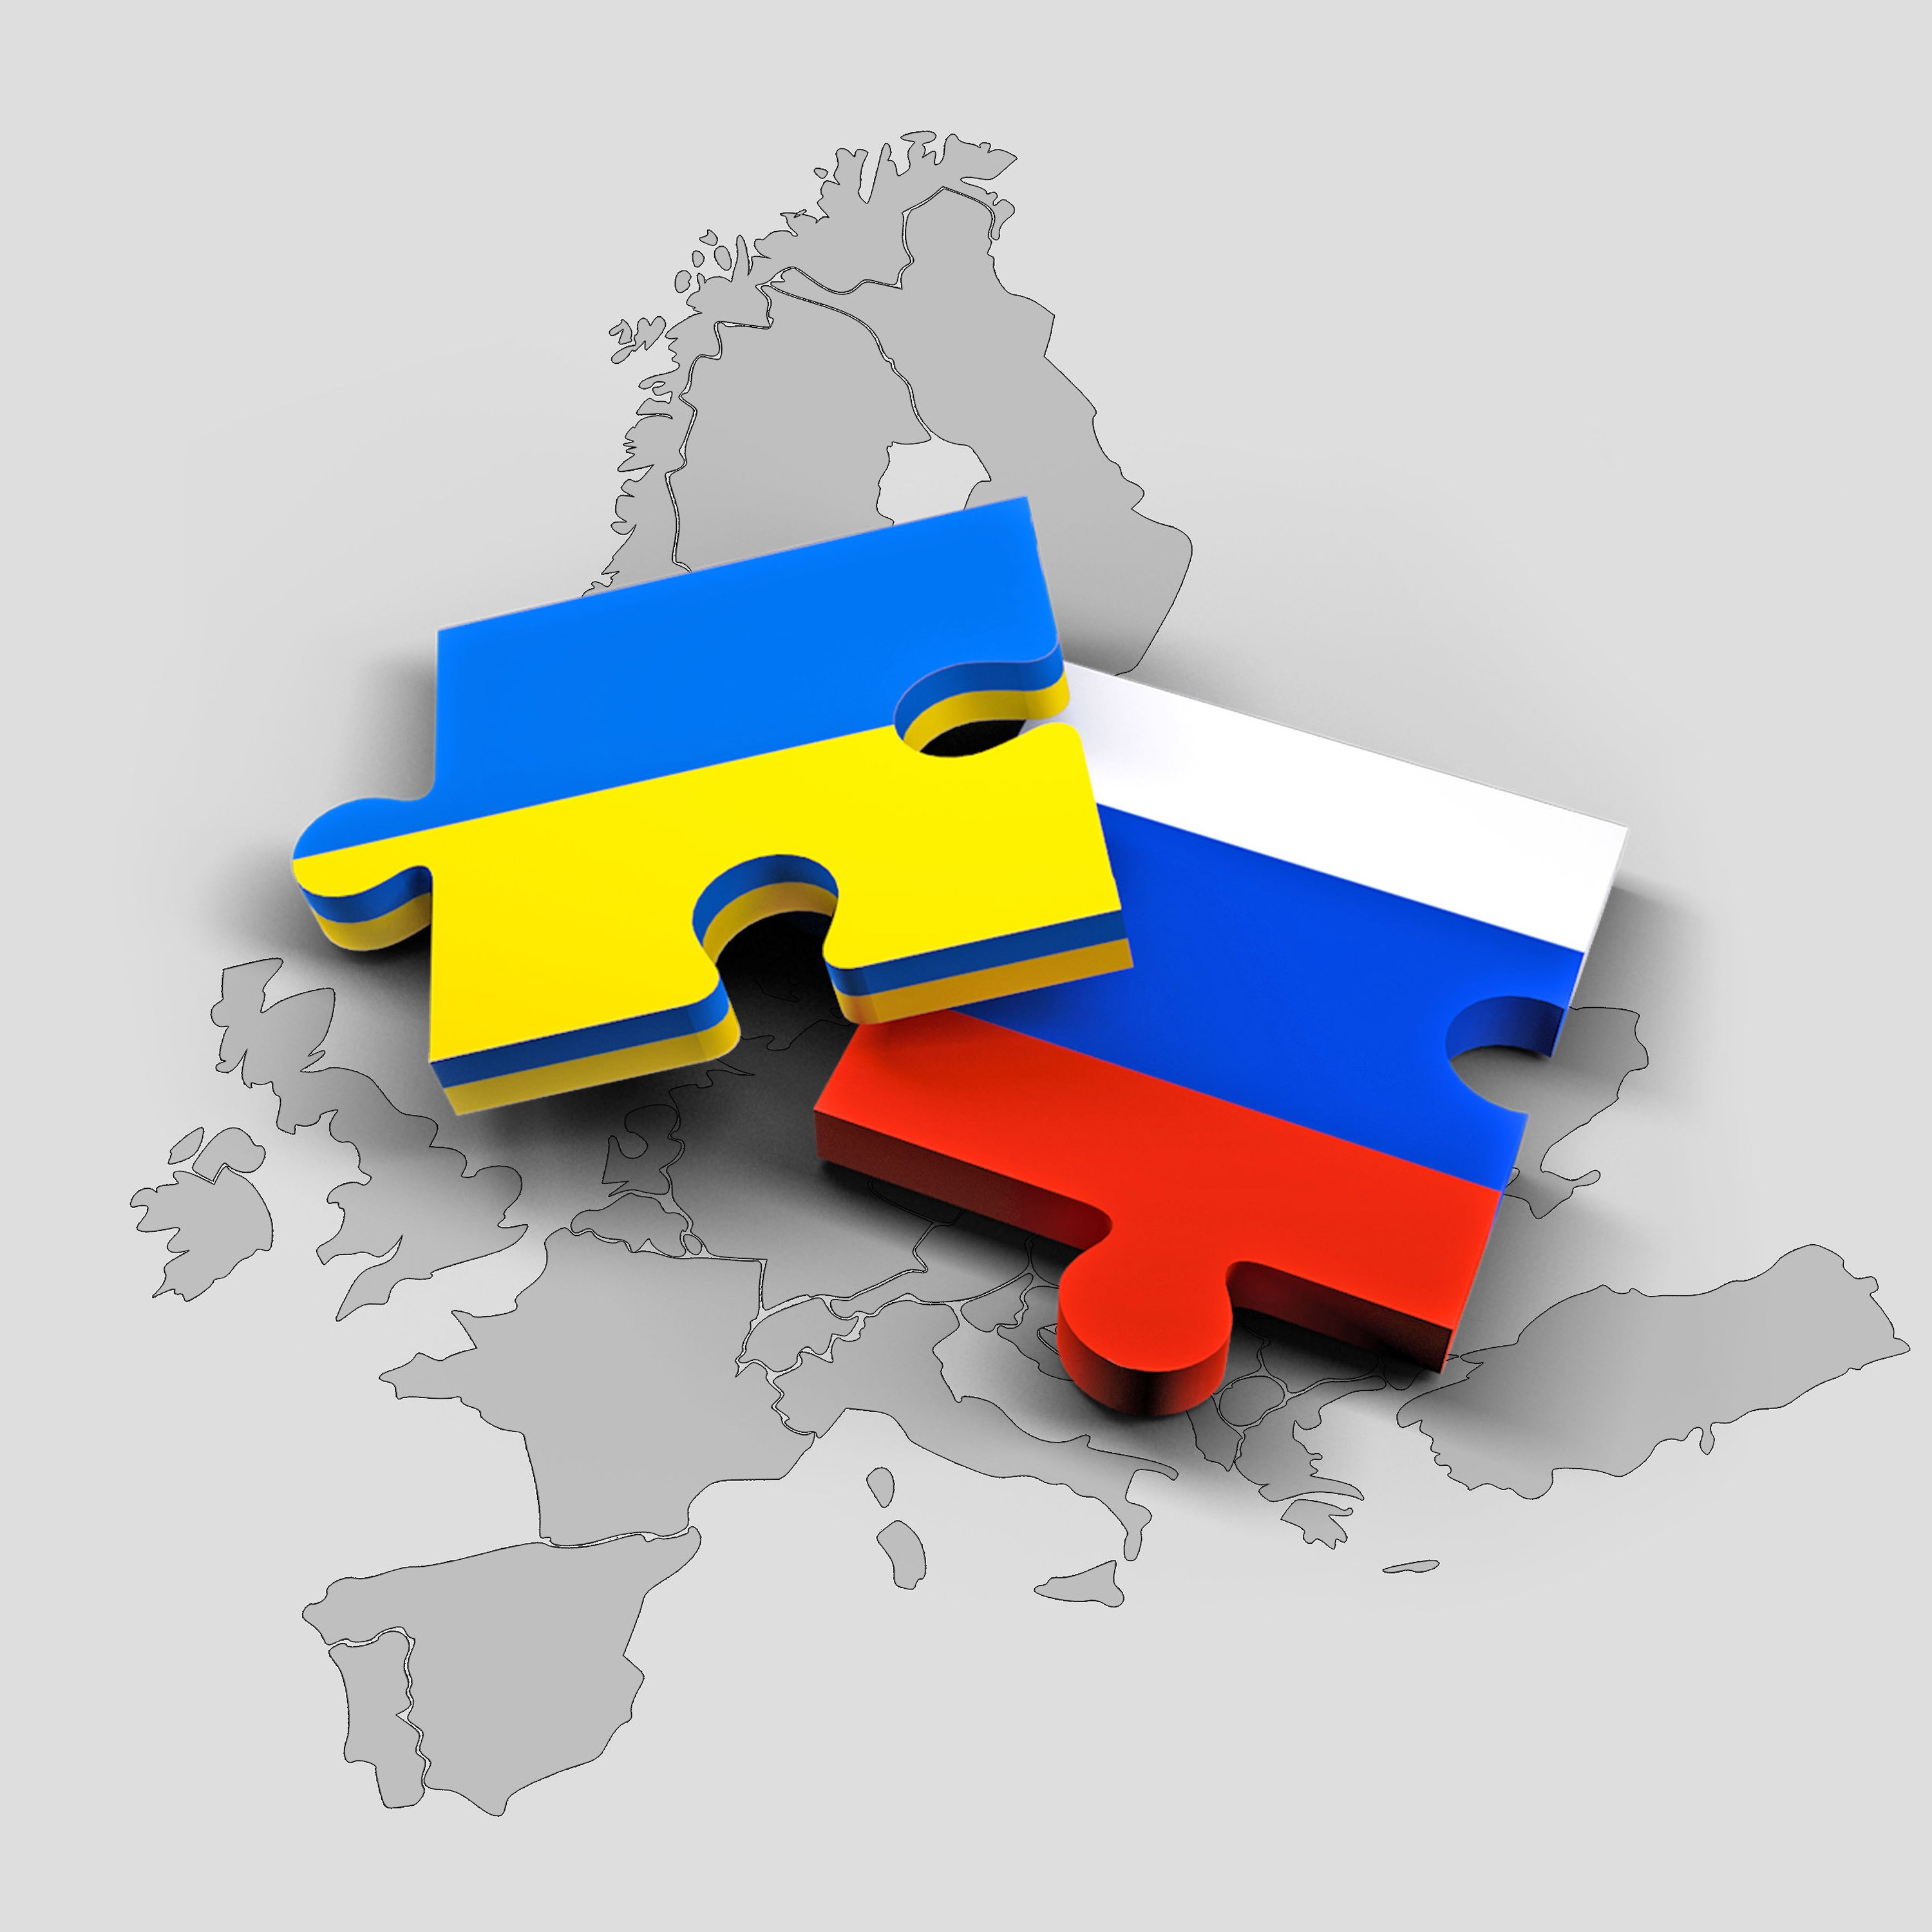 Carte géographique sur laquelle sont déposés des morceaux de casse-têtes aux couleurs des drapeaux de l'Ukraine et de la Russie.